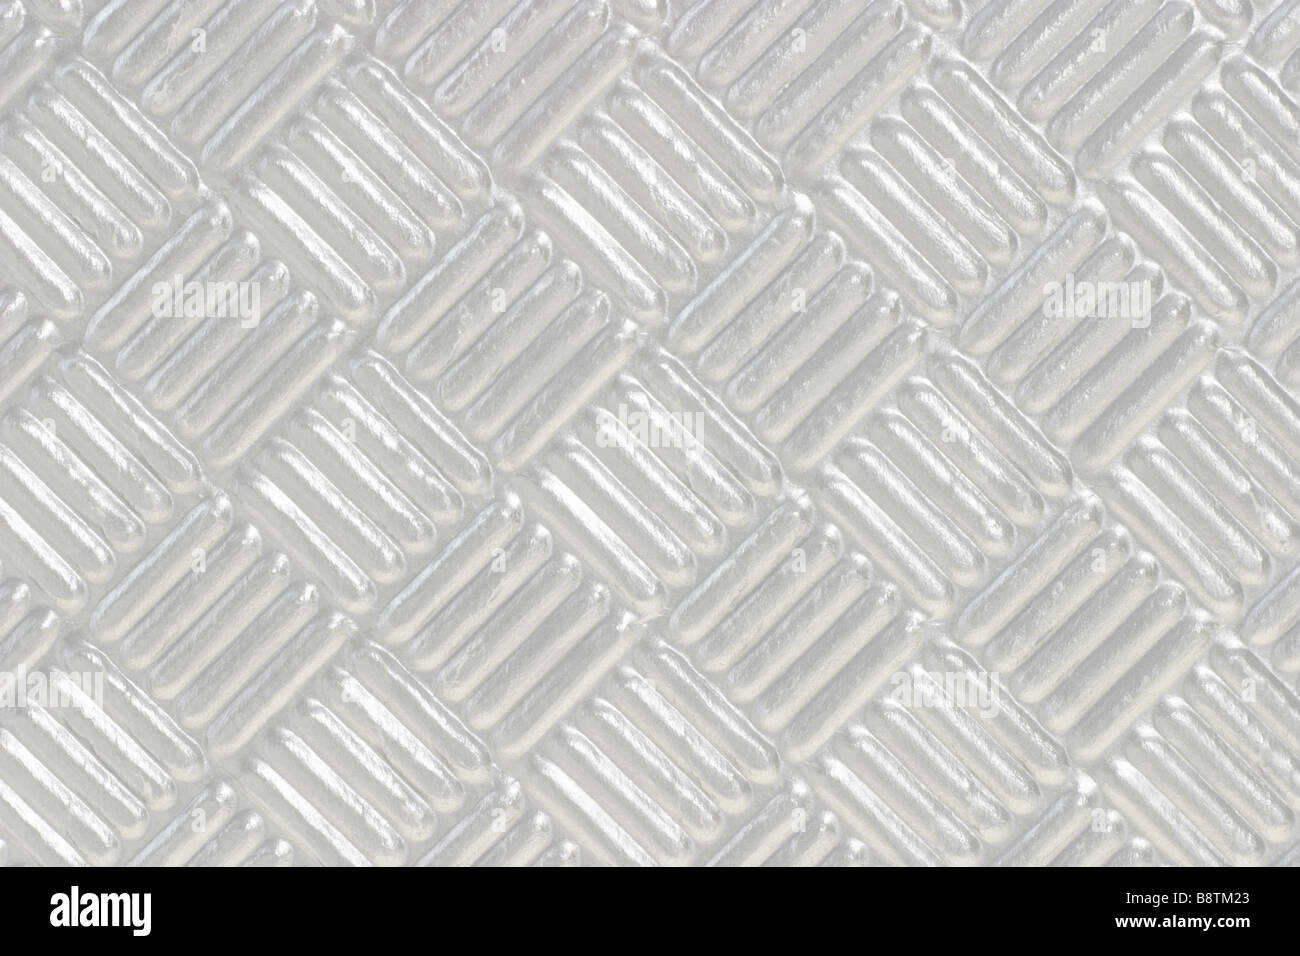 Nahaufnahme von Silber metallic-Muster-Hintergrund Stockfoto